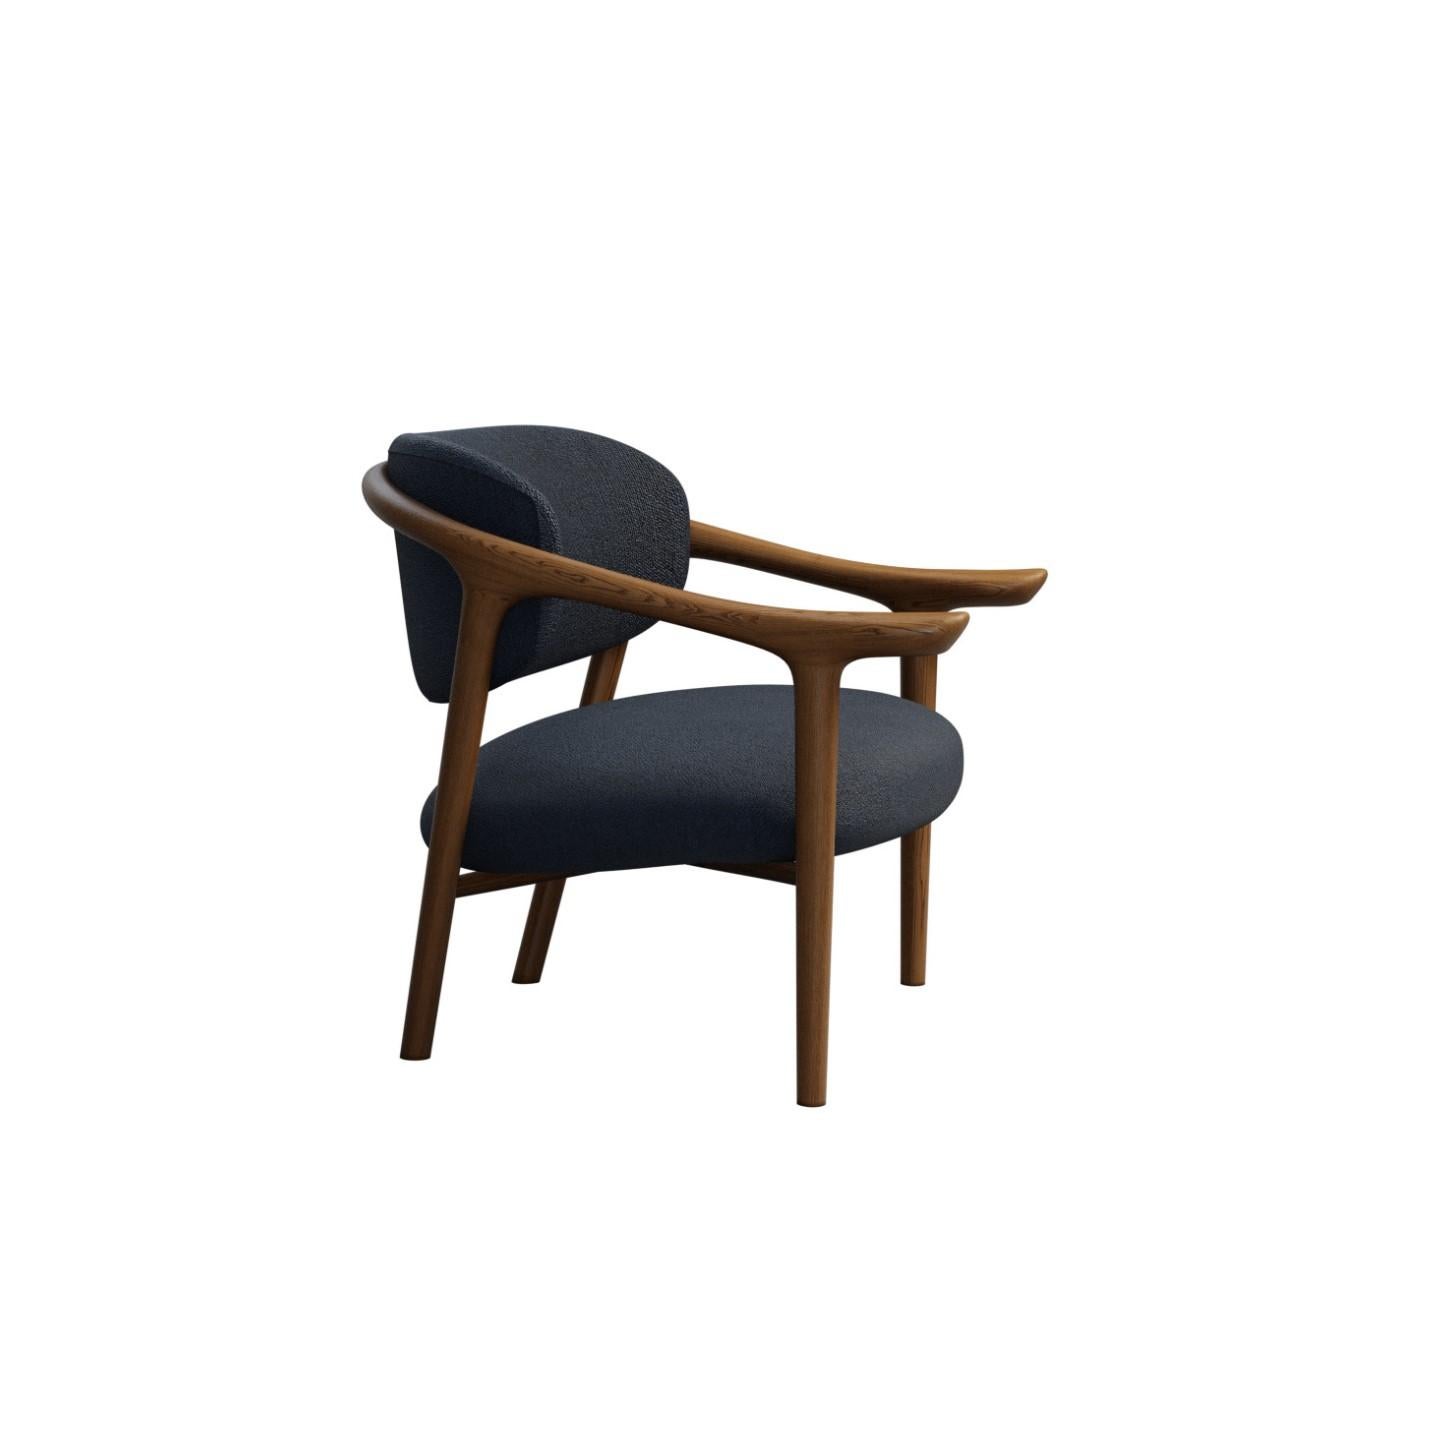 Aida ist ein Sessel aus geschwungenem Eschenholz und gepolstertem Sitz und Rückenlehne mit einem ikonischen Design.
Dank seiner Eleganz und seines Komforts passt sich dieser anmutige, geschwungene und vielseitige Sessel an verschiedene Umgebungen